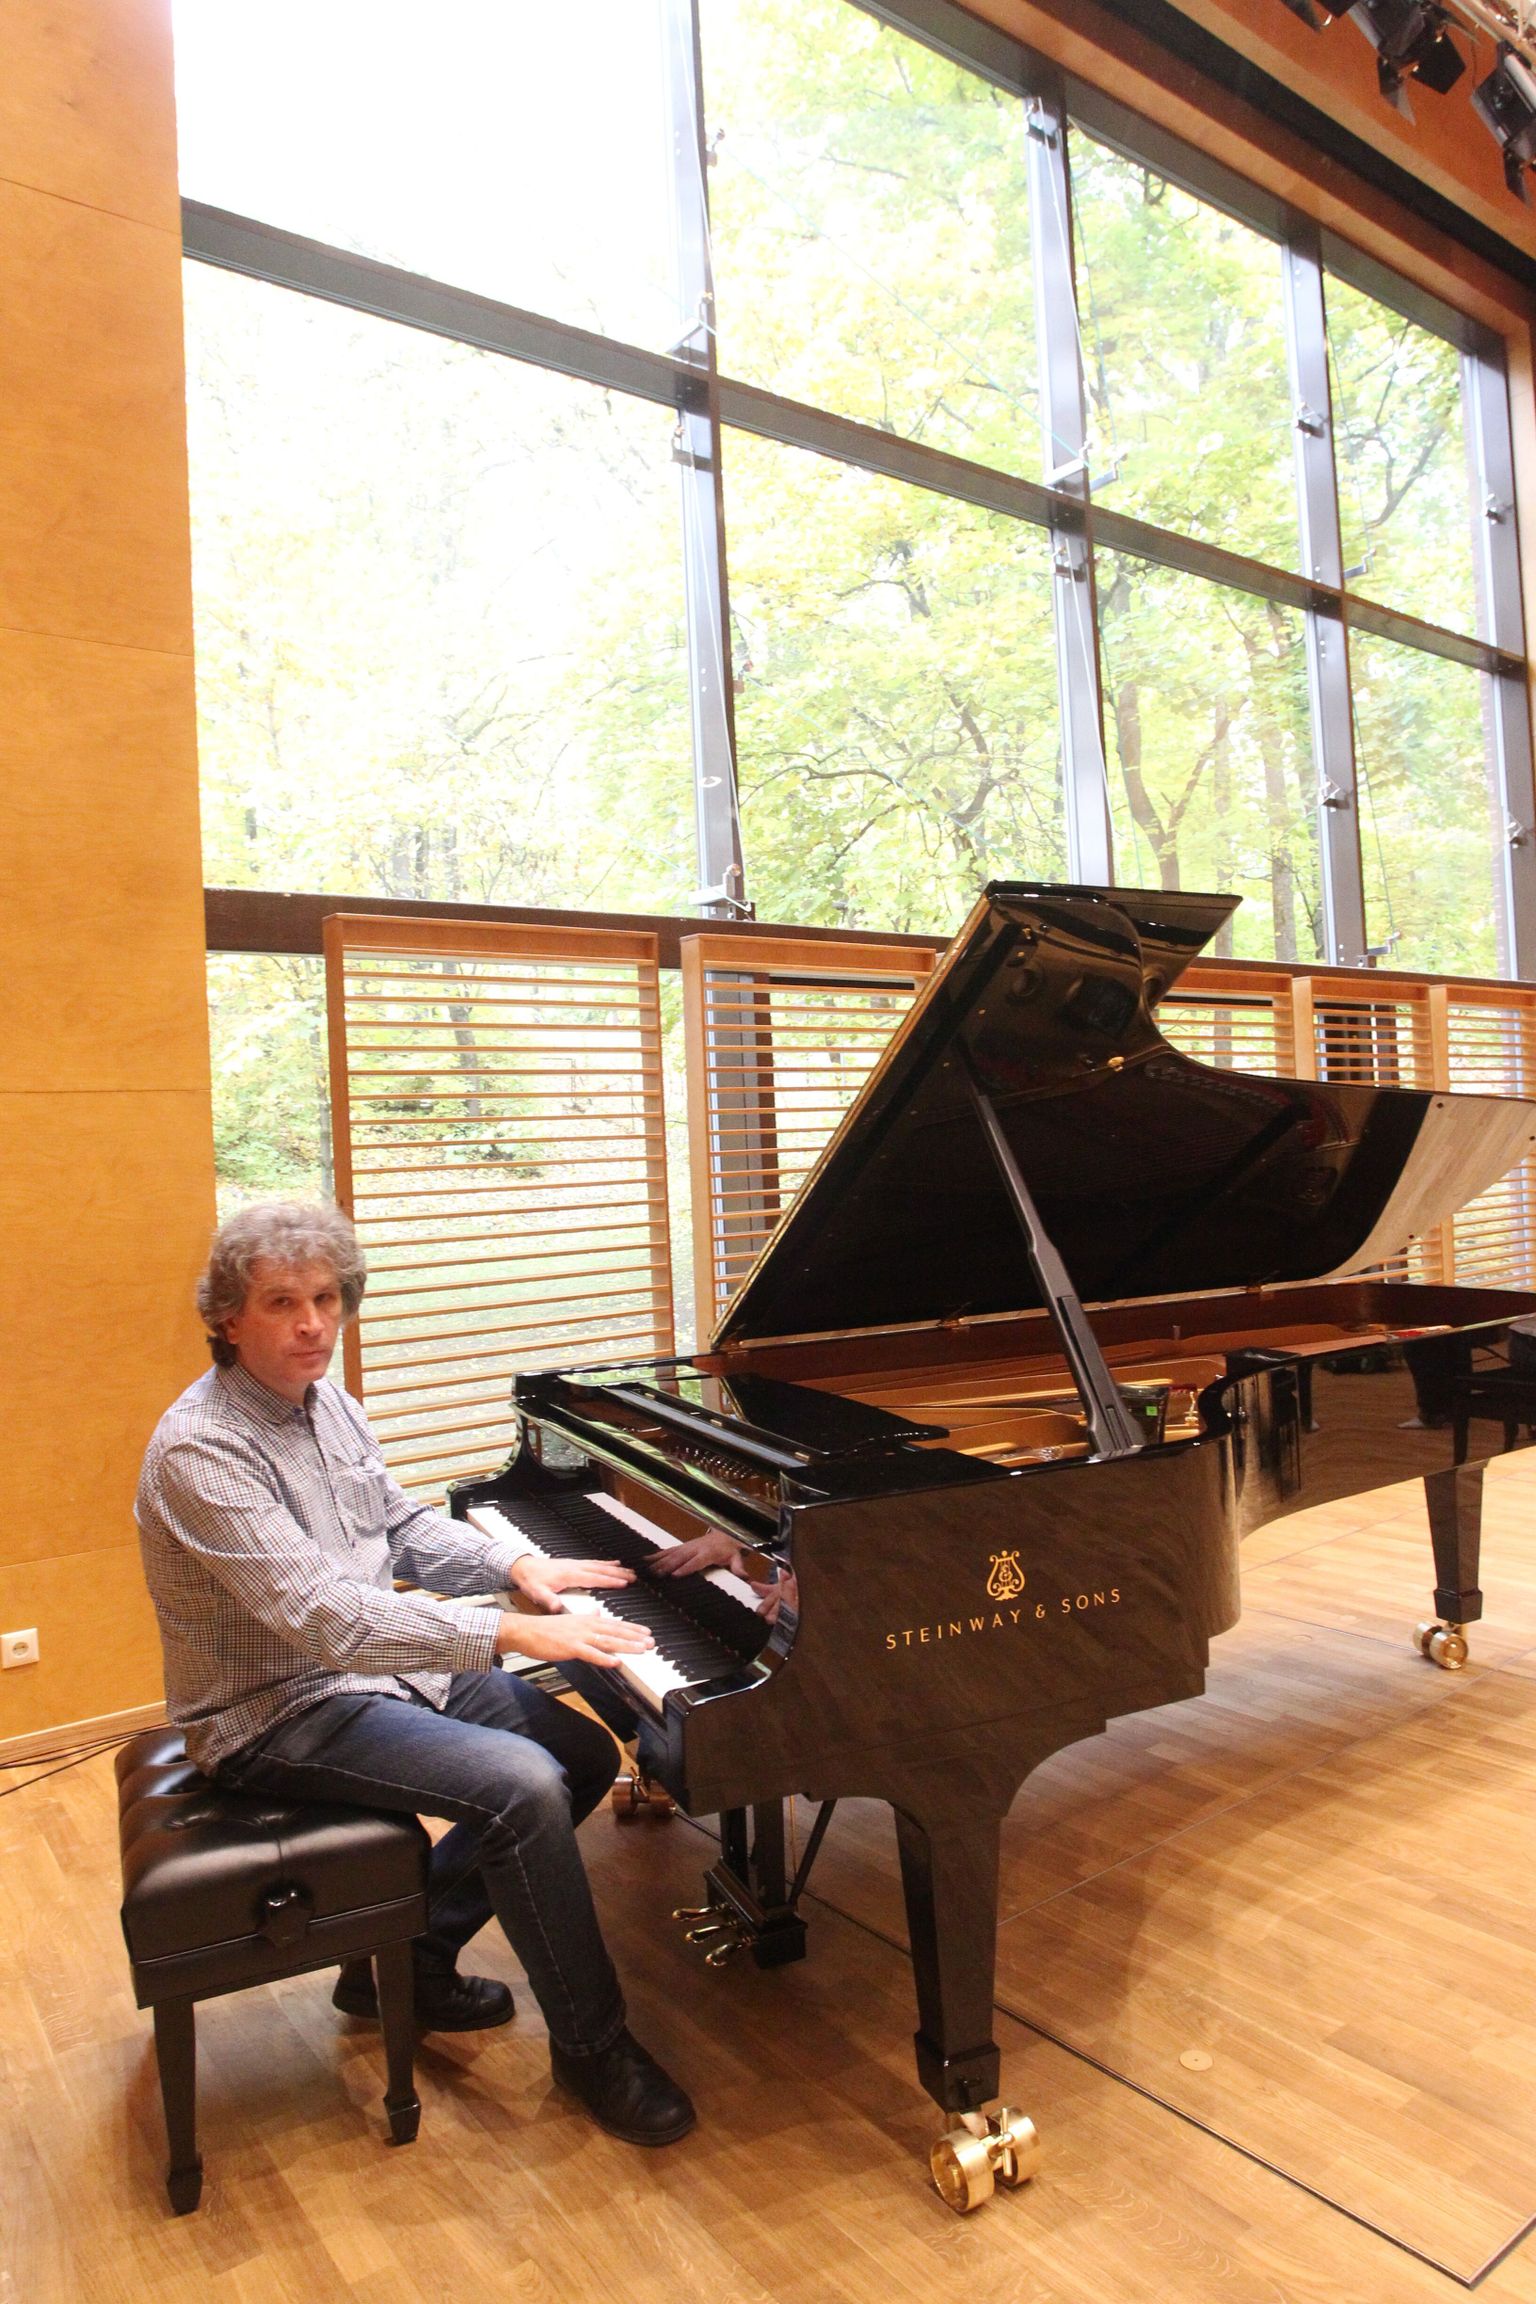 Pildil pianist Tanel Joamets Elleri muusikakooli Tubina saalis.